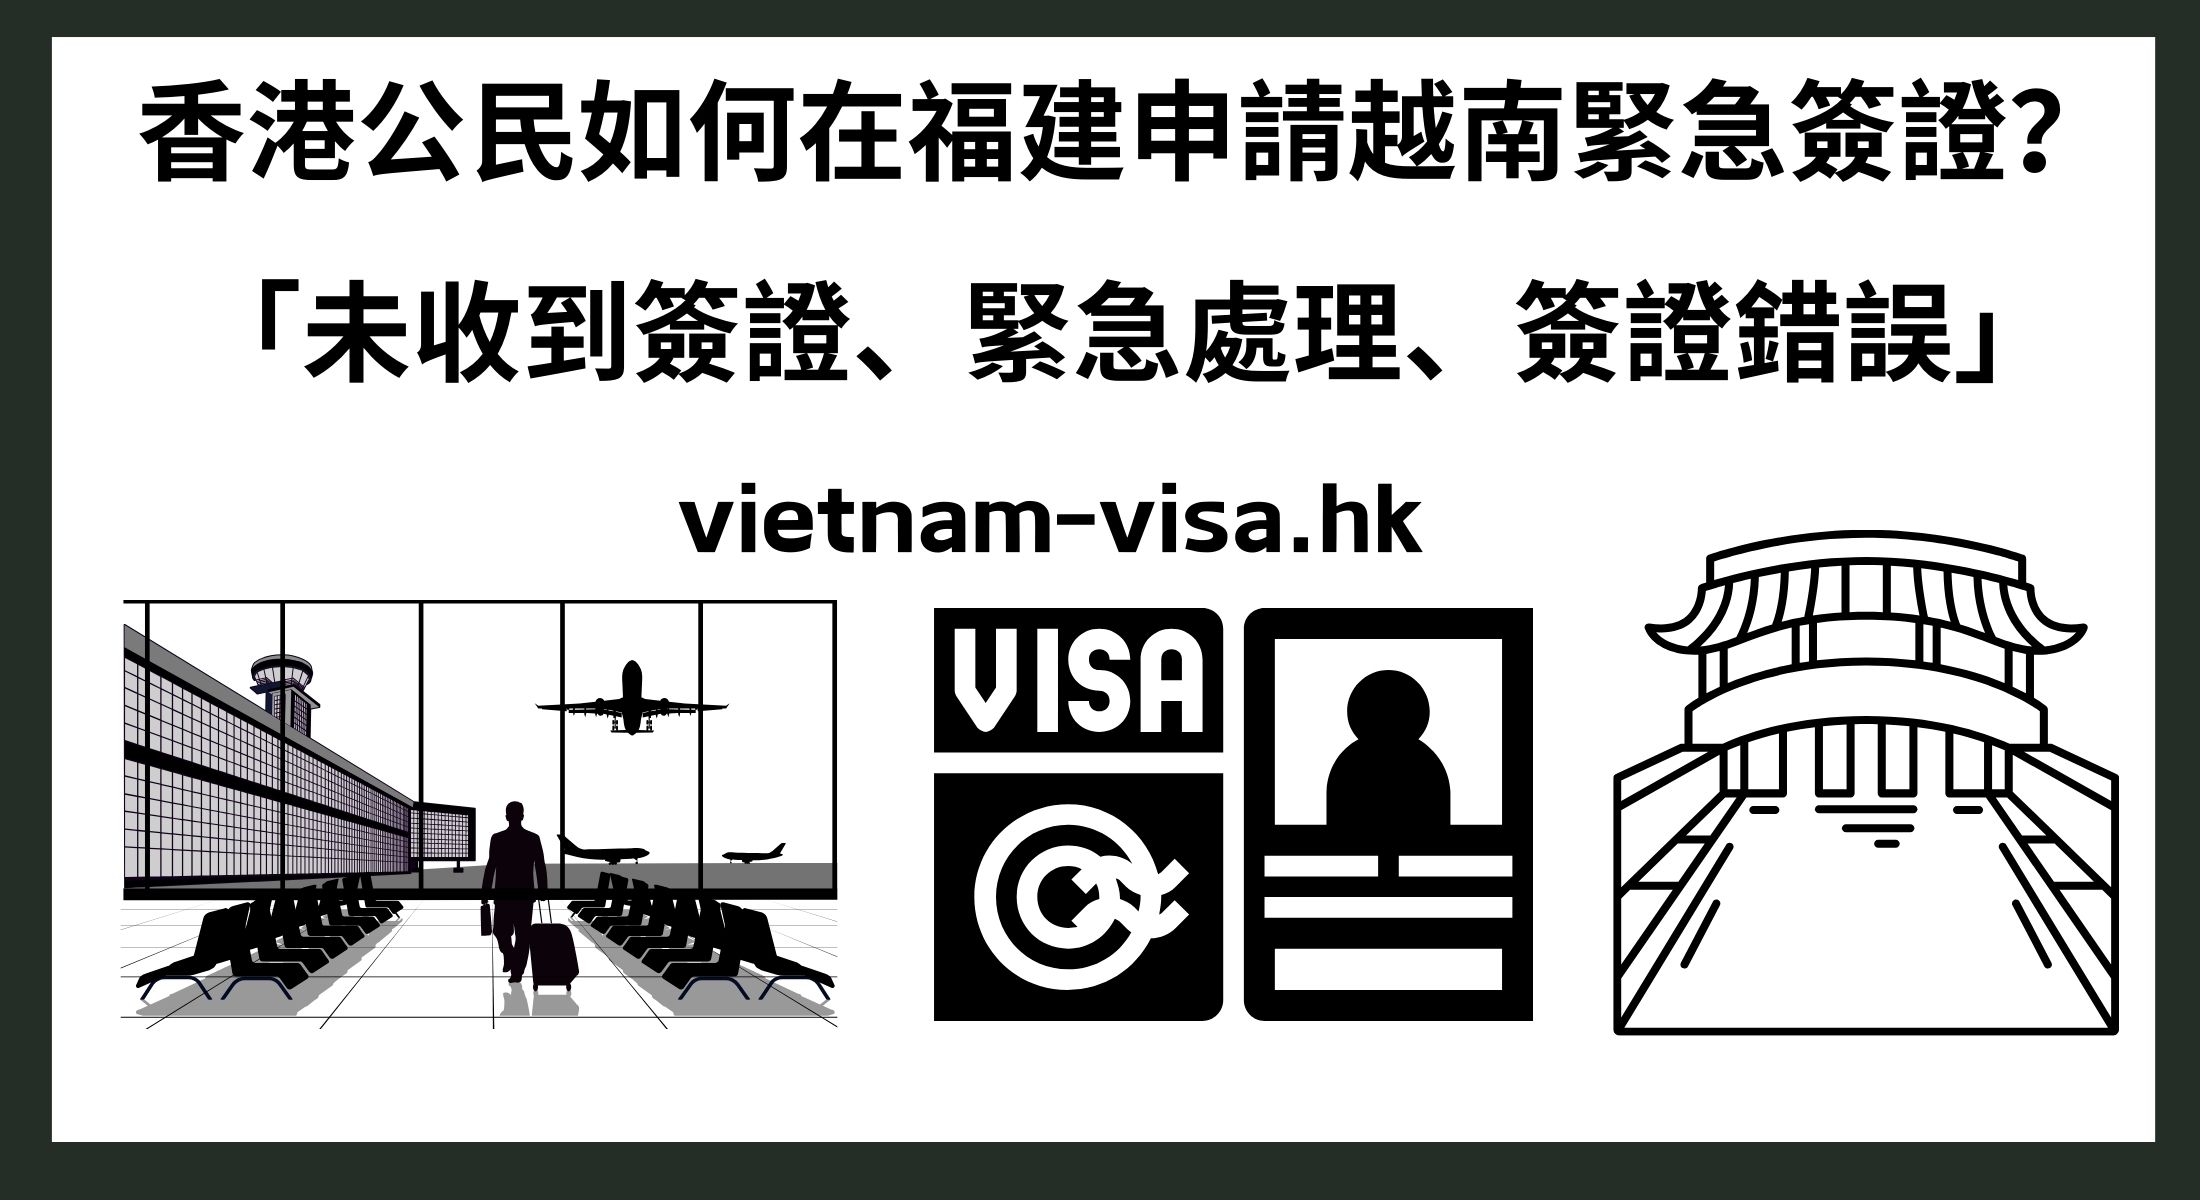 香港公民如何在福建申請越南緊急簽證？ 「未收到簽證、緊急處理、簽證錯誤」